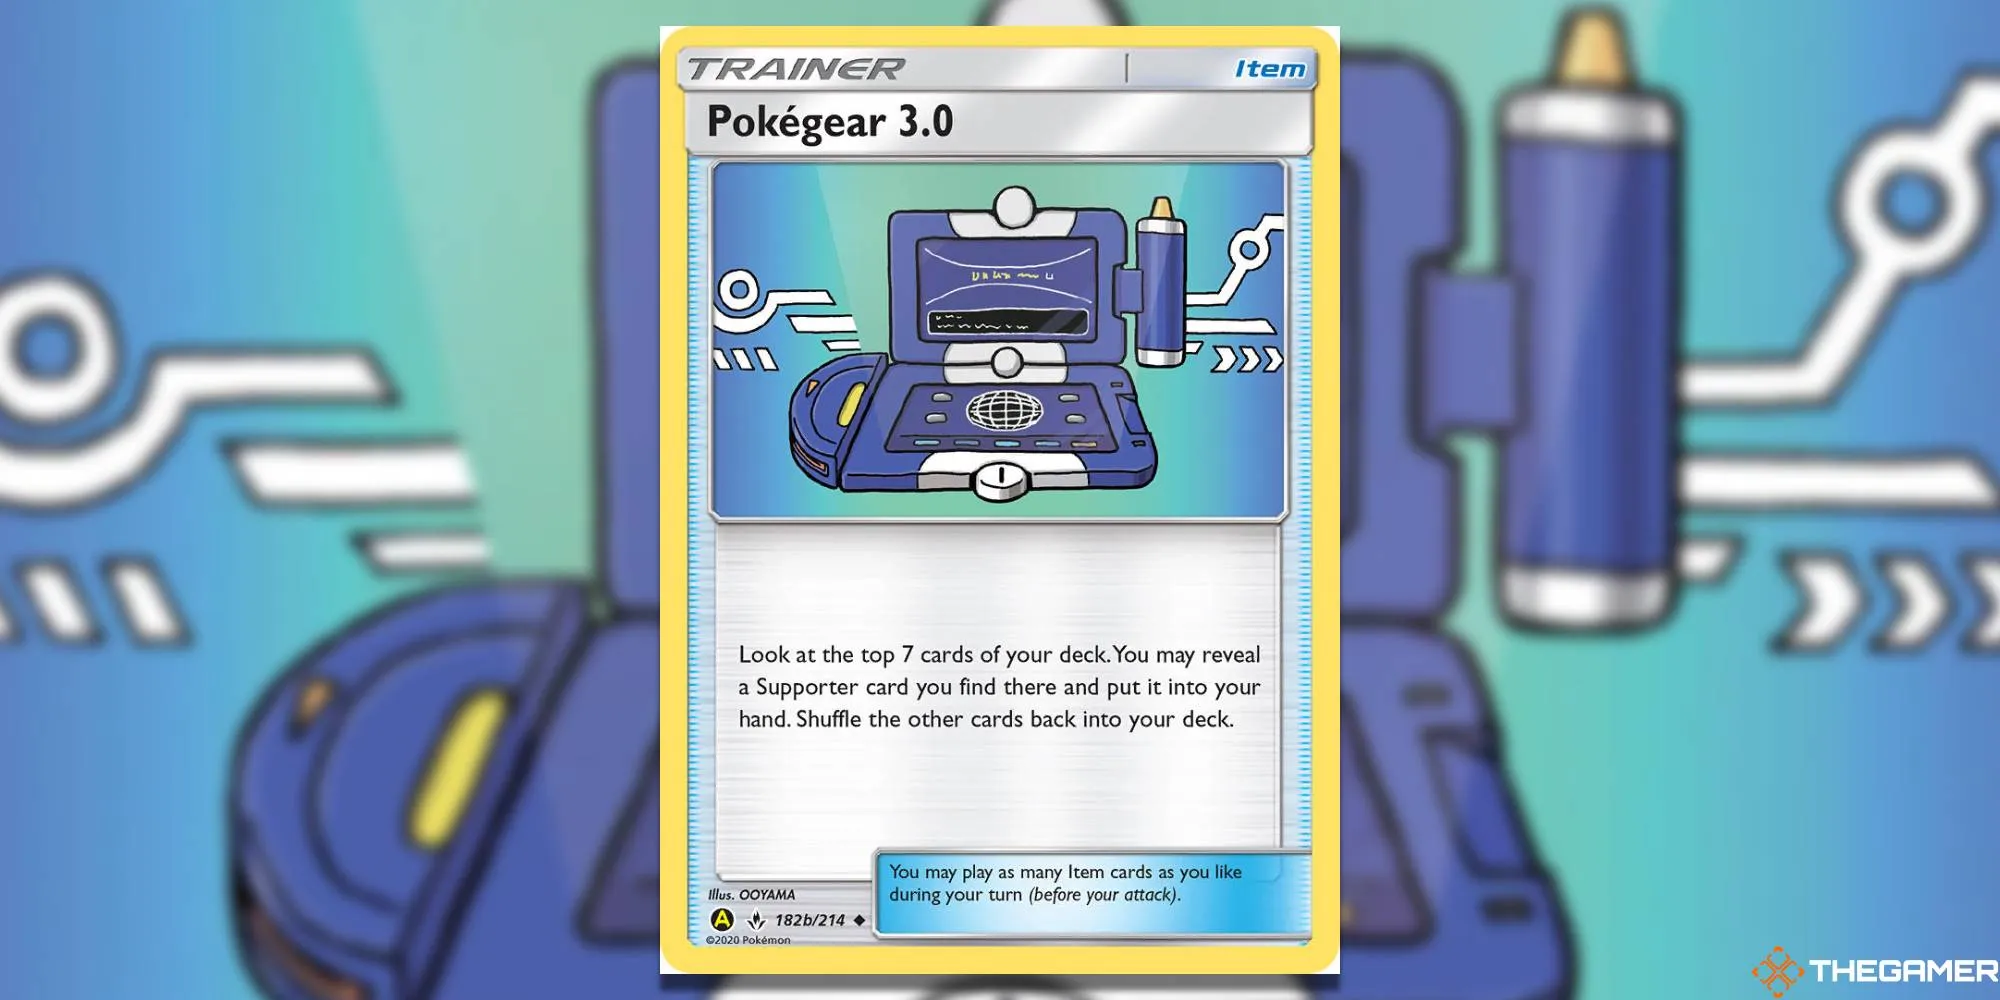 Pokegear 3.0 card from Pokemon TCG